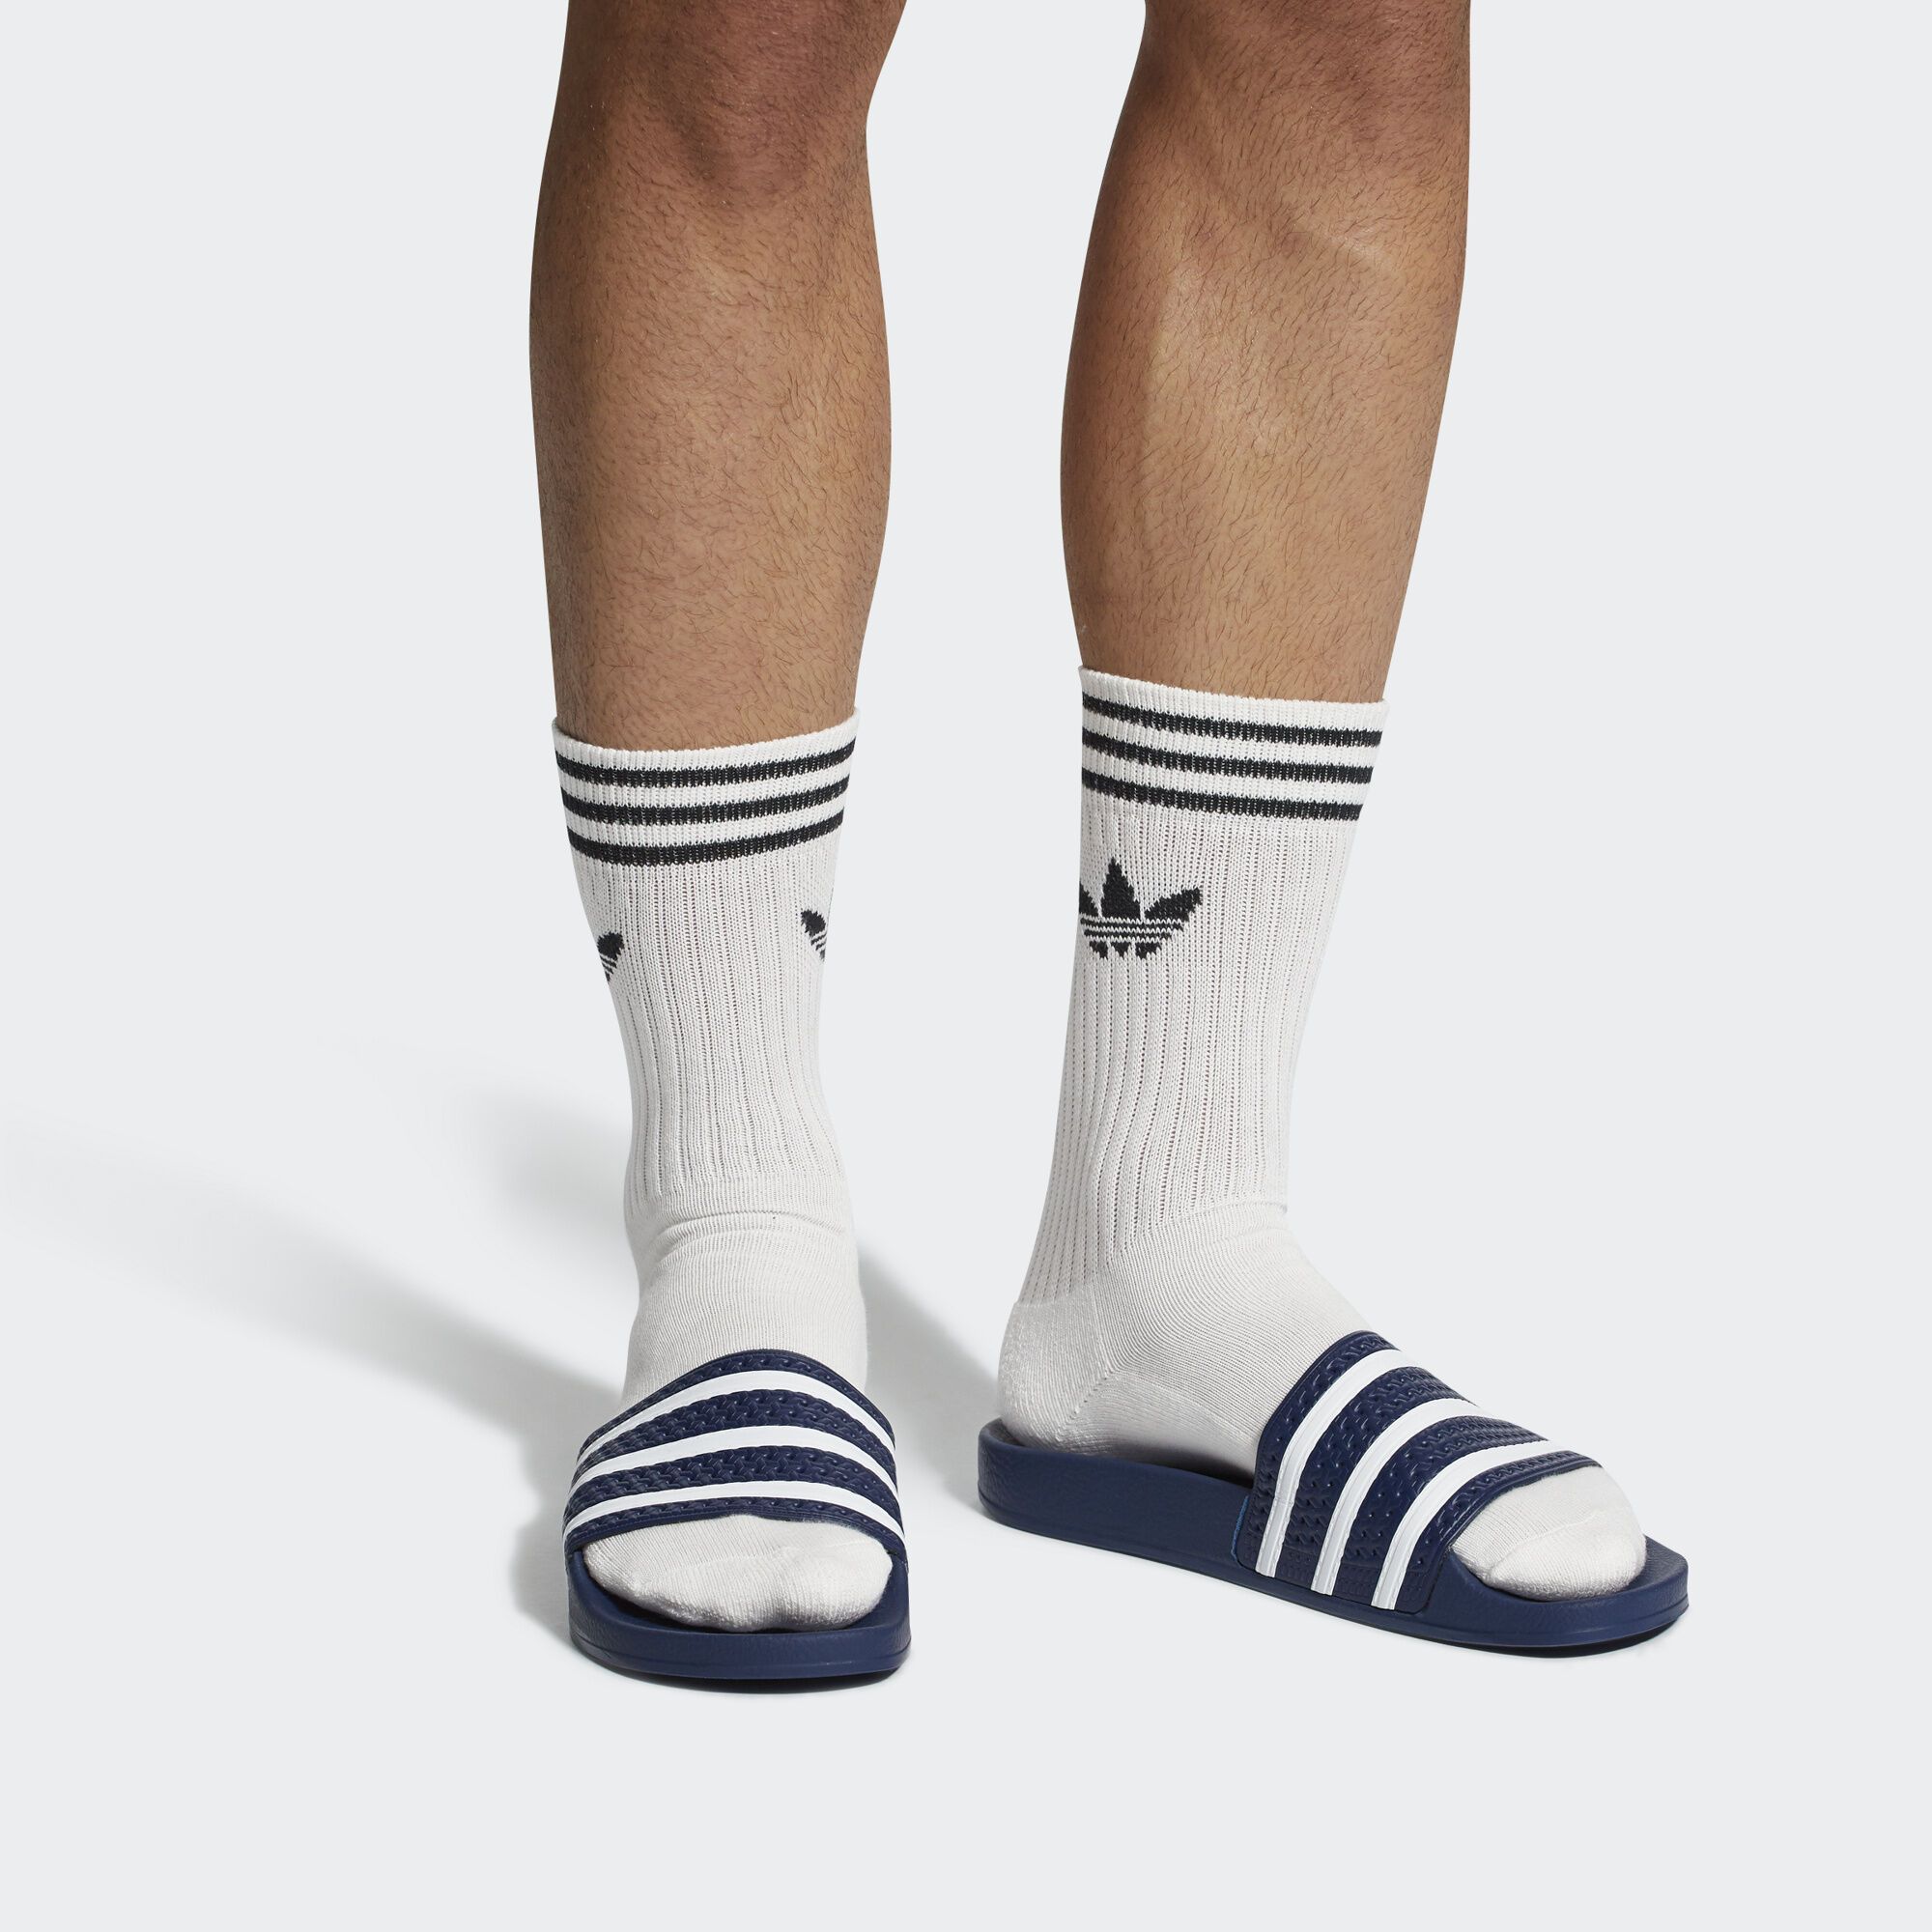  Vớ Originals Unisex Adidas Solid Crew Sock S21489 